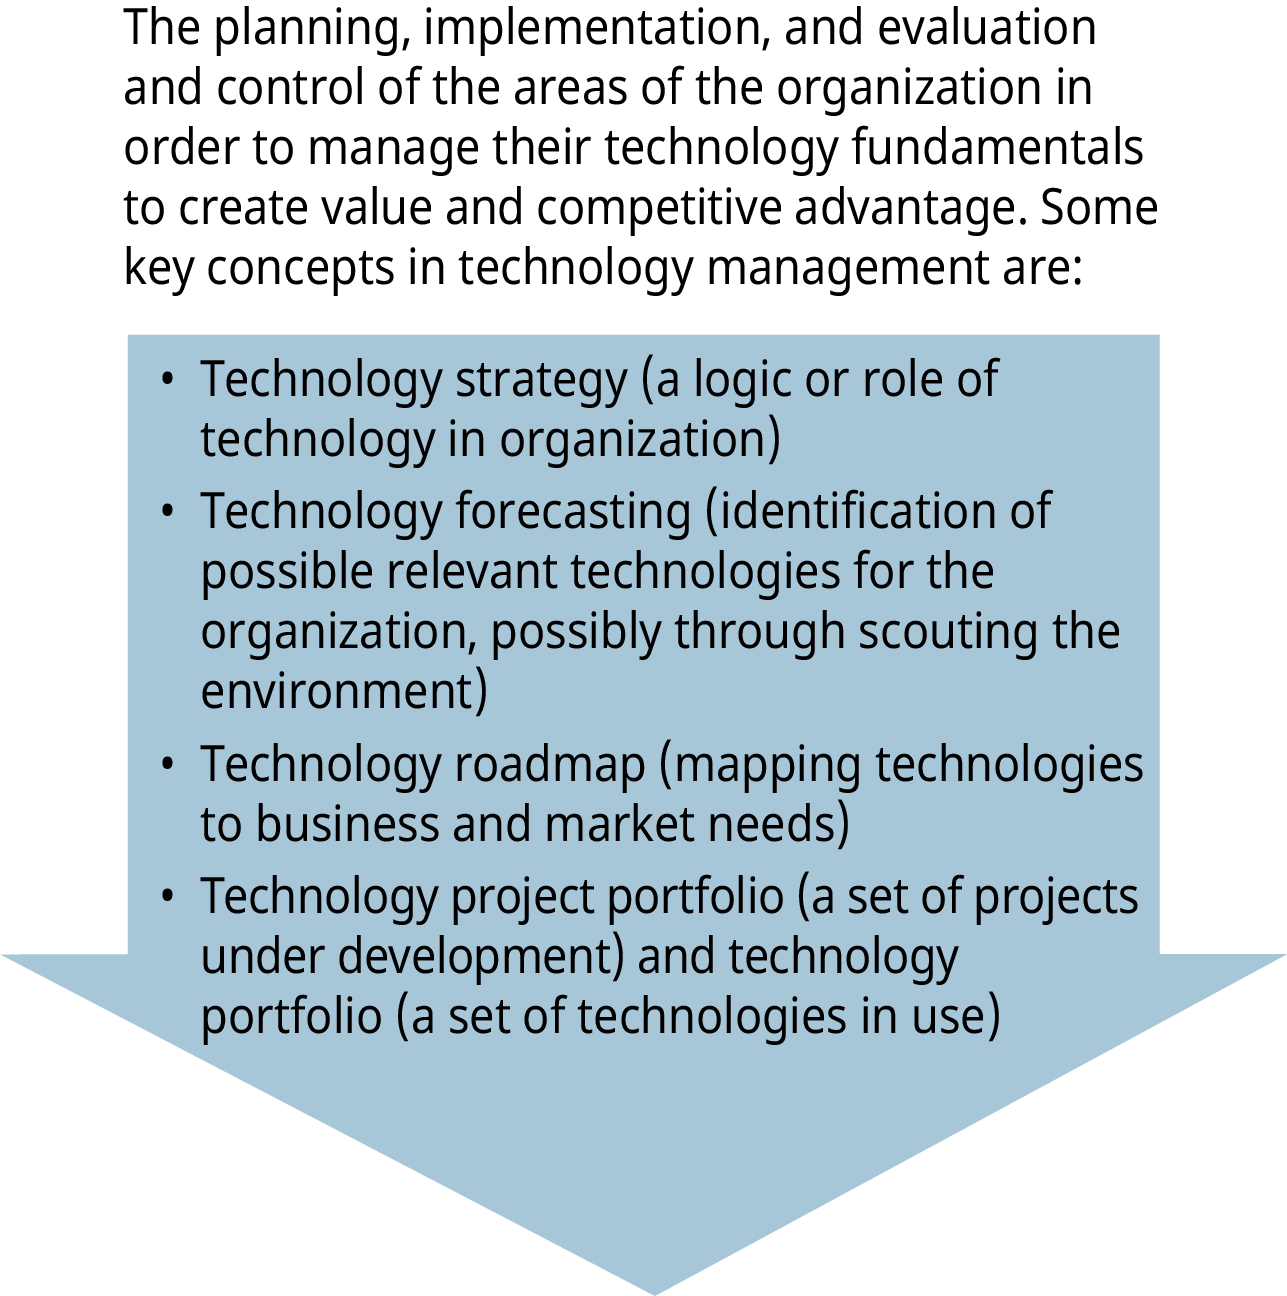 Un diagrama ilustra el concepto de gestión de la tecnología, con los cuatro conceptos clave enumerados en una flecha hacia abajo.